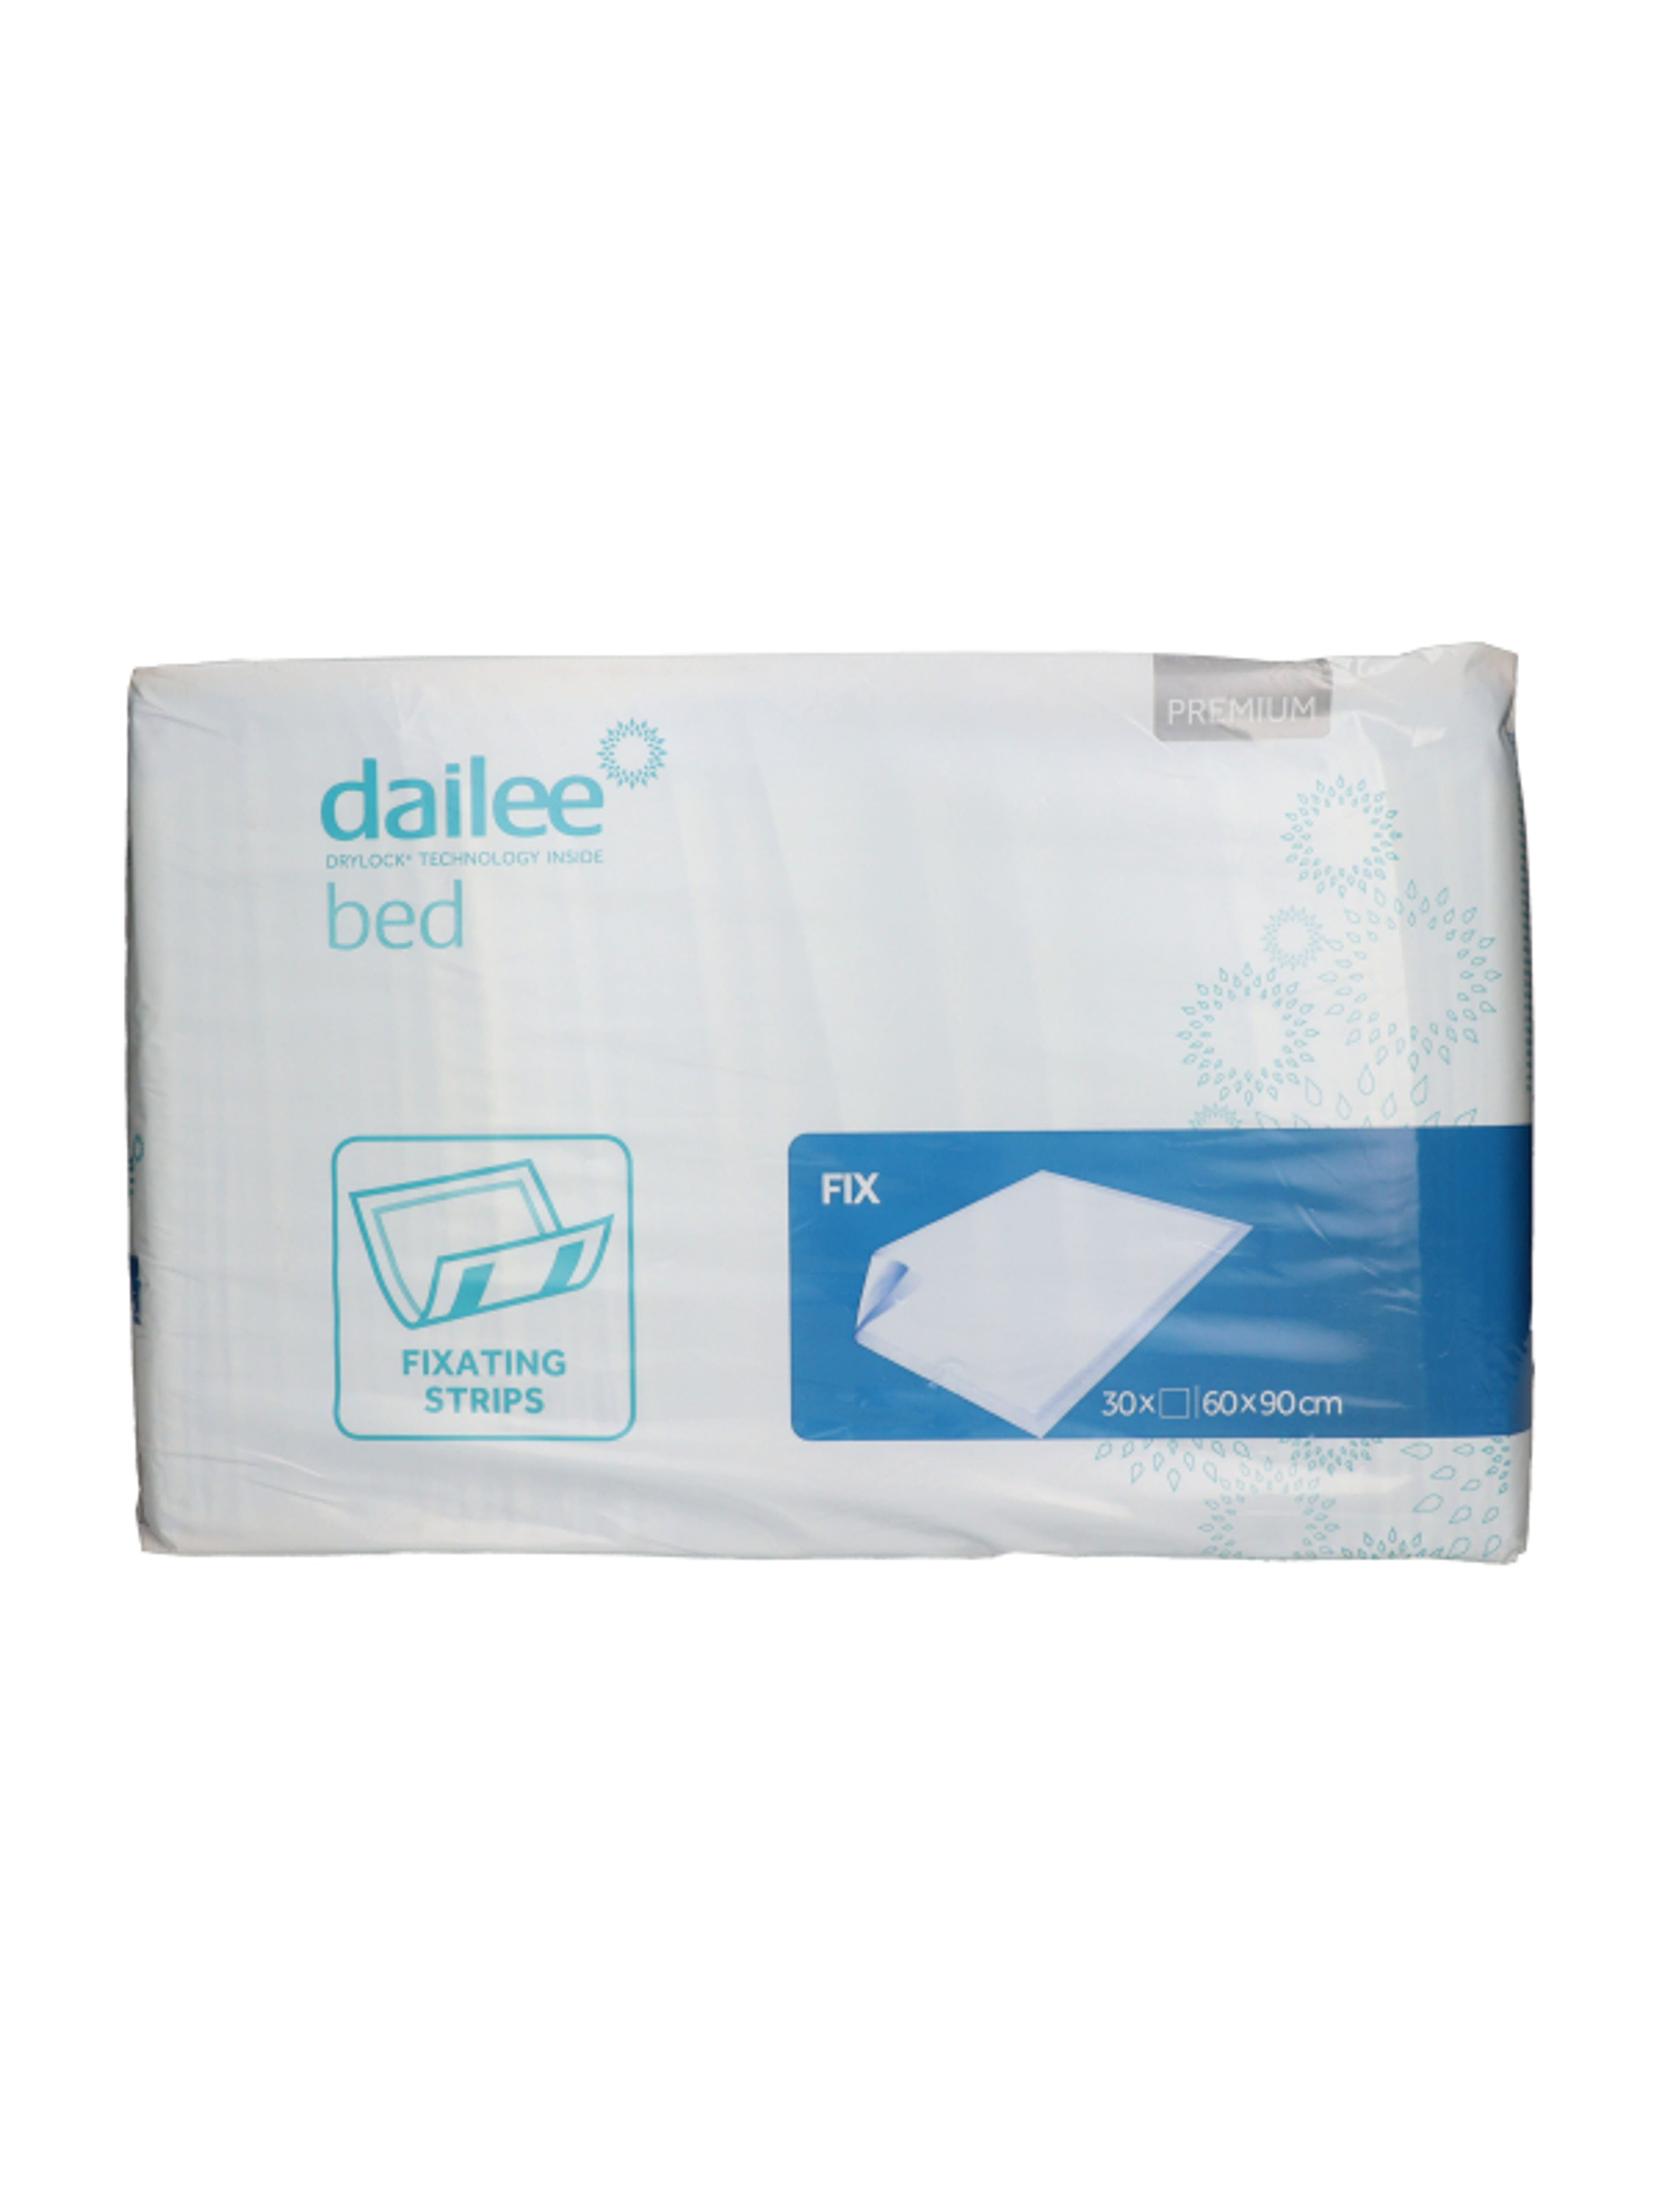 Dailee Bed Premium Fix betegalátét 60x90 cm - 30 db-2